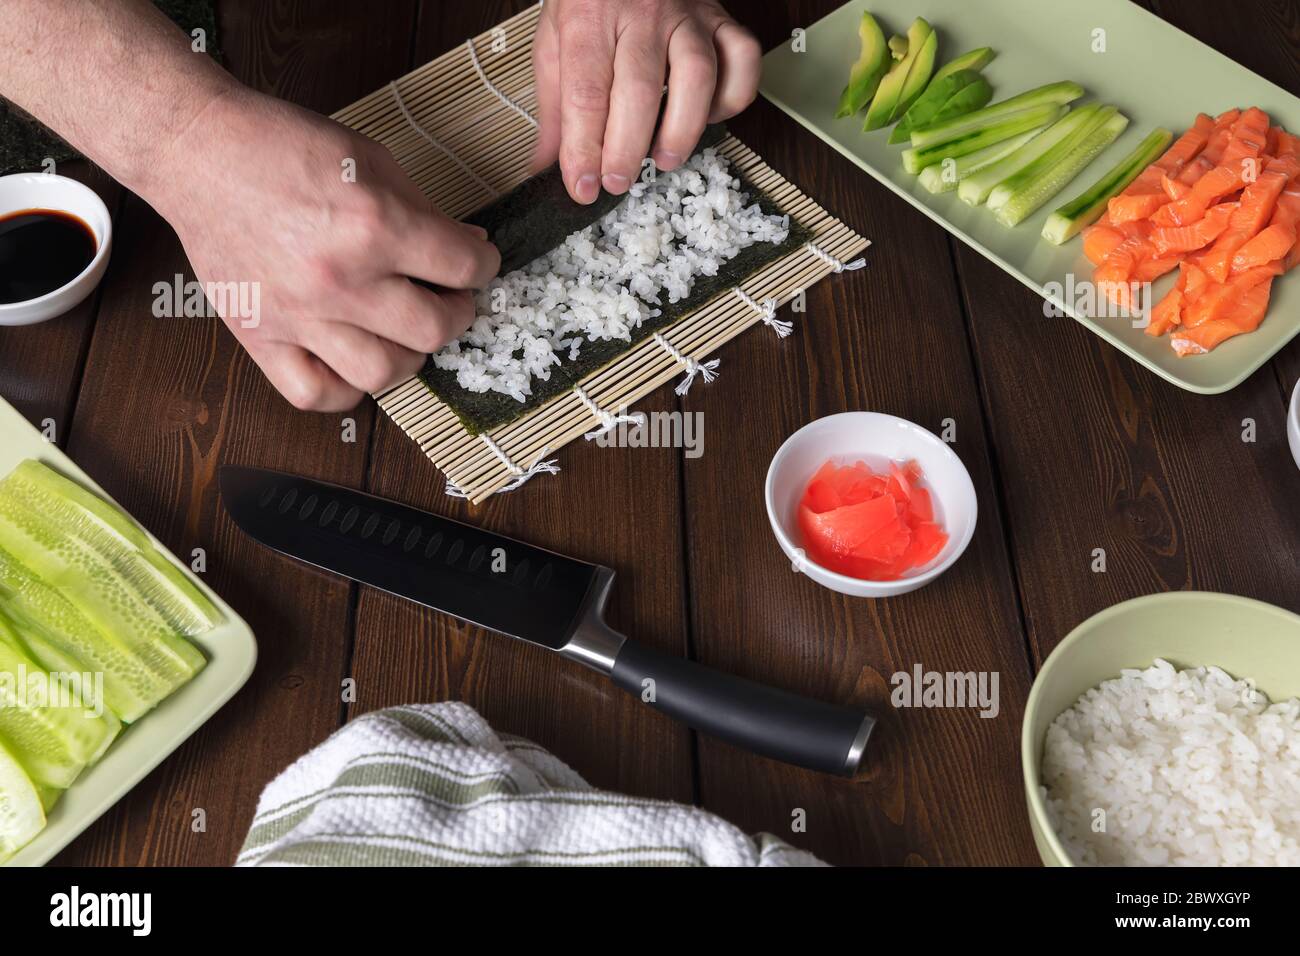 Cucina a casa panini con riso, salmone, avocado, cubember e nori. Cibo casalitto. Cucina casalinga Foto Stock